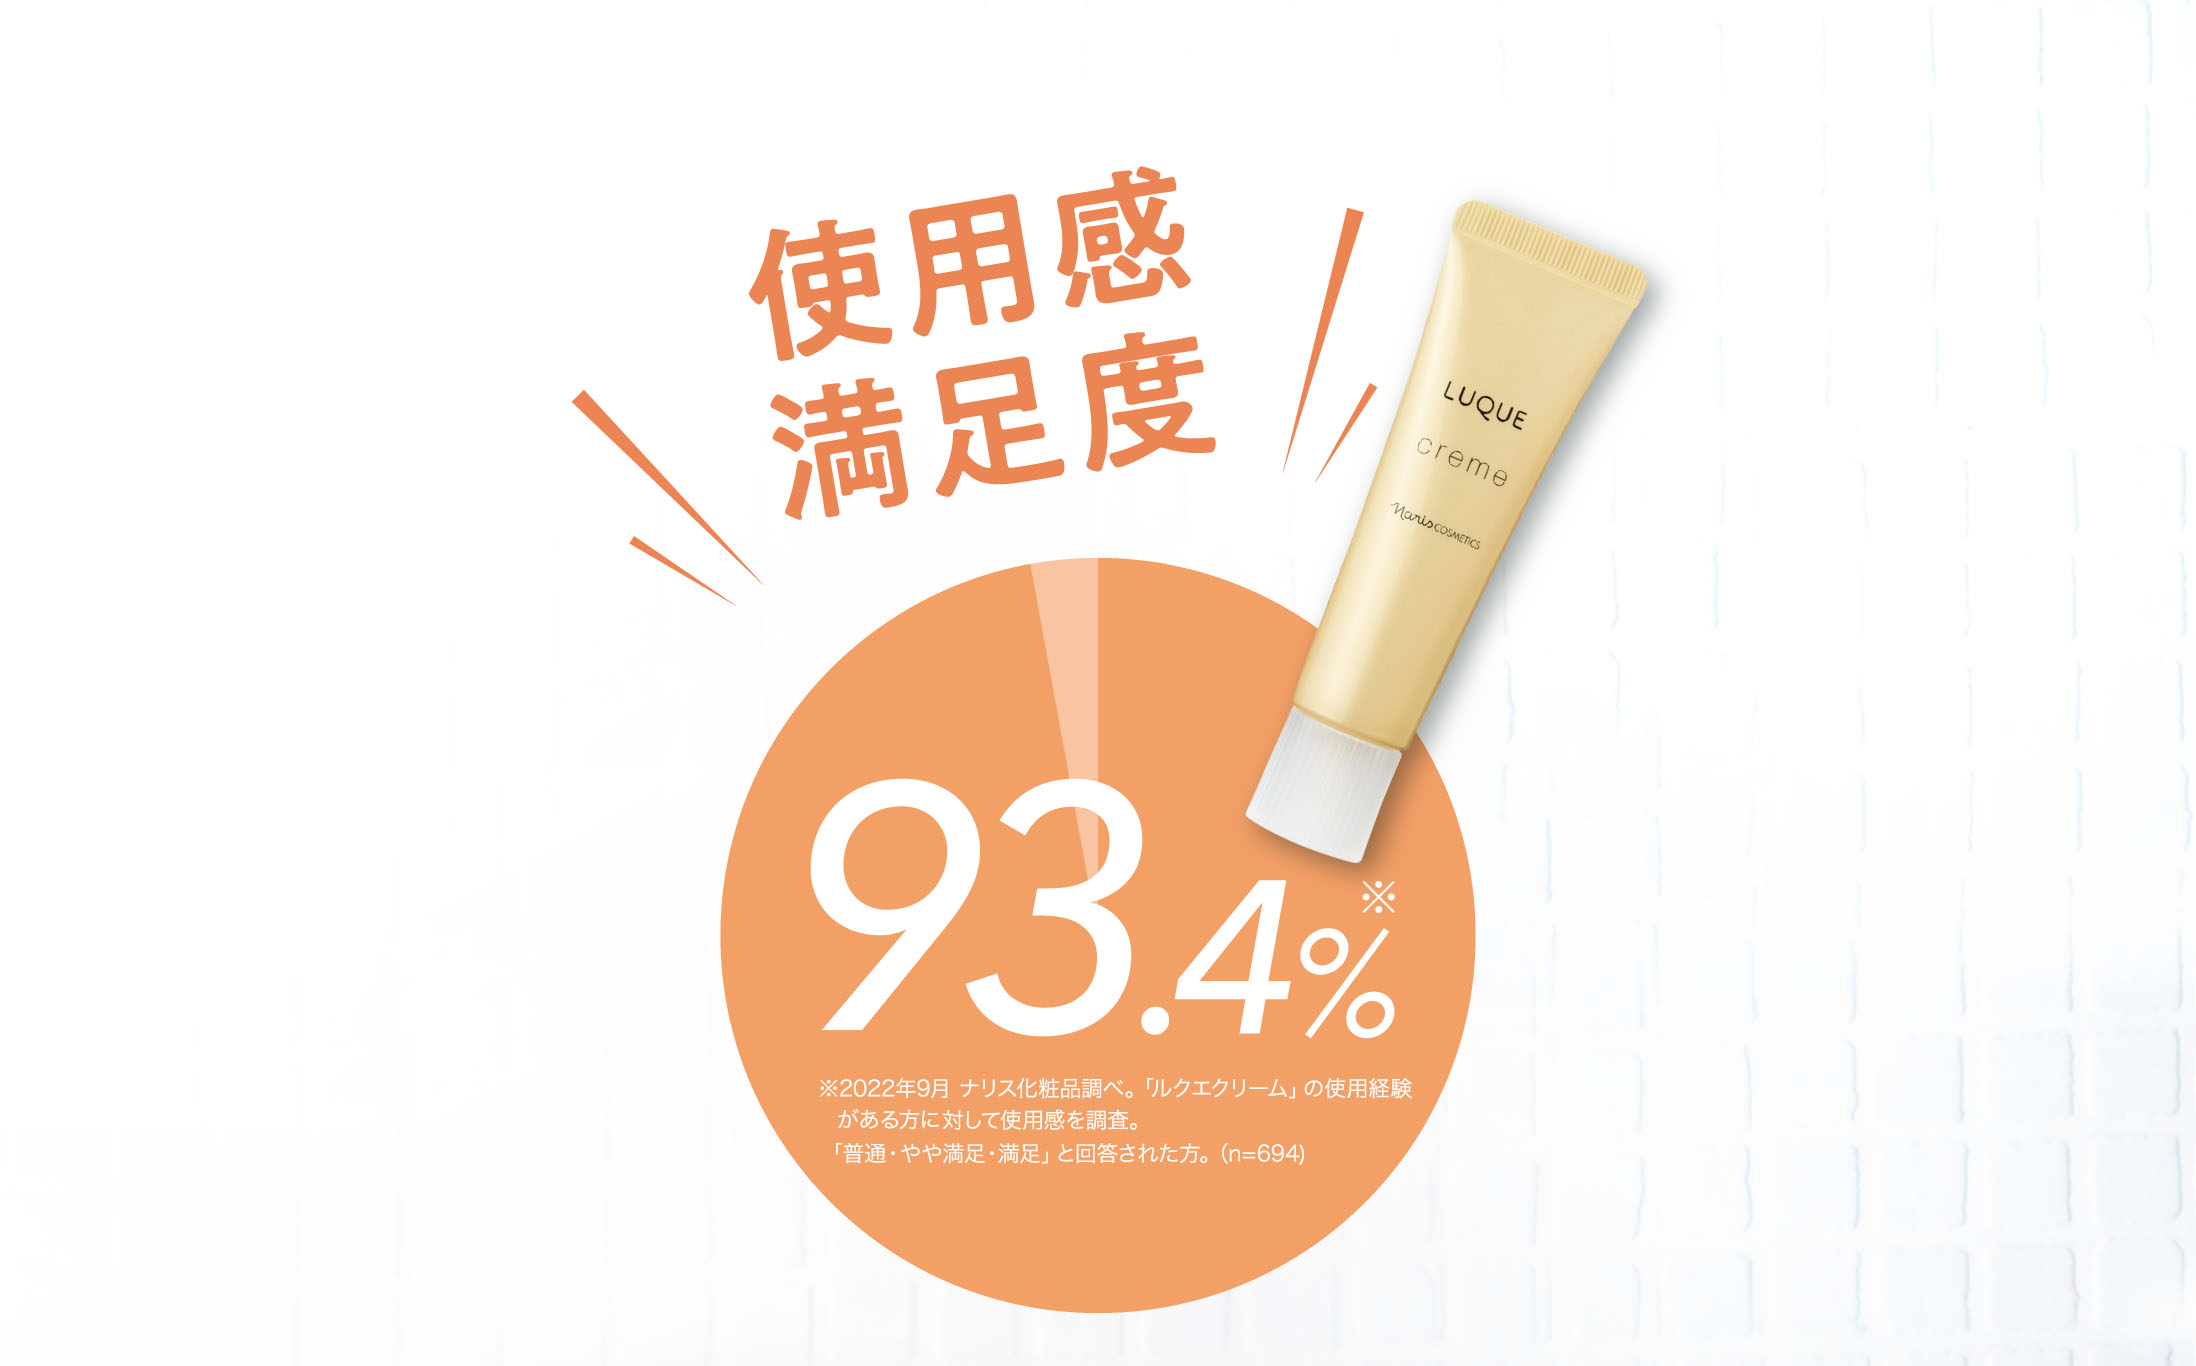 使用感、満足度93.4%(※2022年9月 ナリス化粧品調べ。「ルクエクリーム」の使用経験がある方に対して使用感を調査。「普通・やや満足・満足」と回答された方。（n=694))